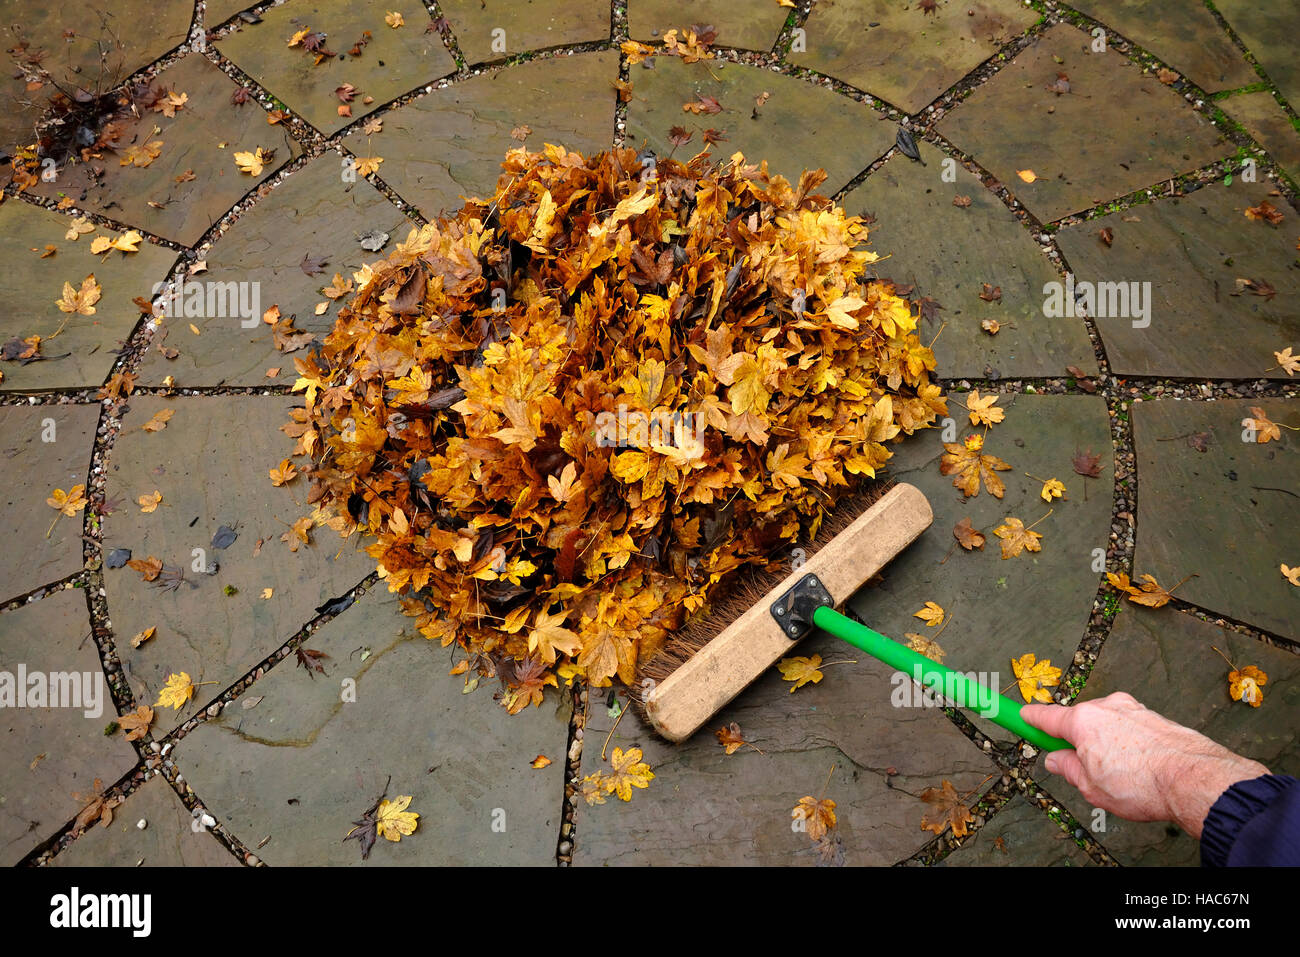 Brushing up autumn leaves Stock Photo